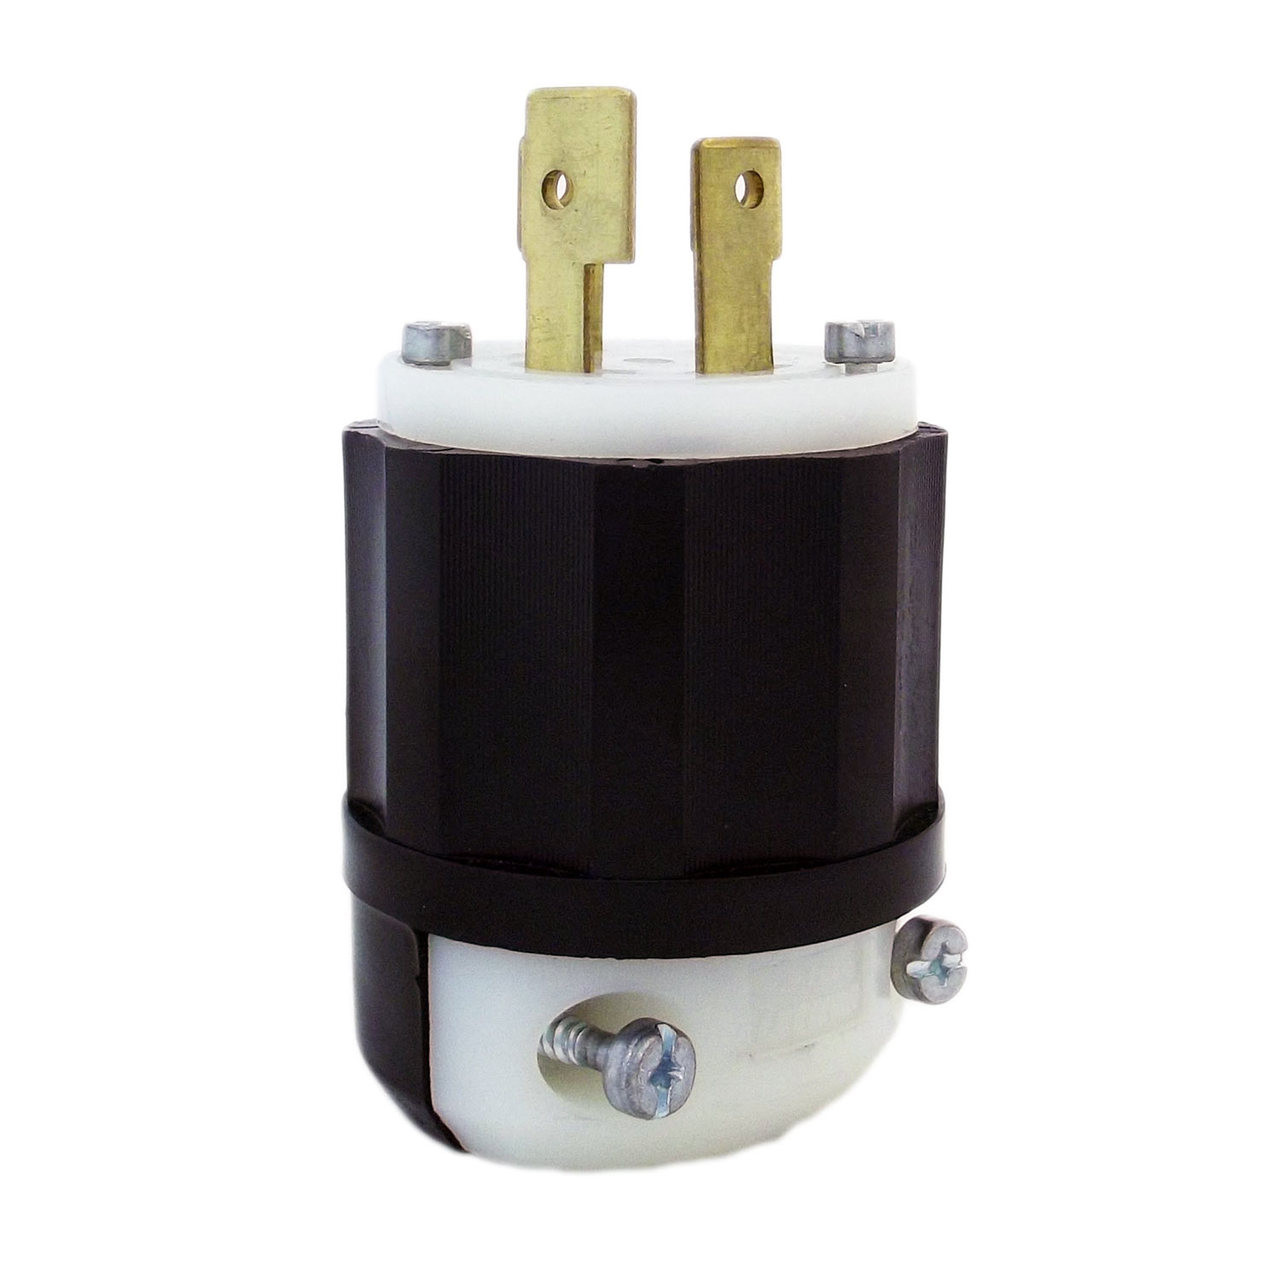 Leviton 2751 - 30 Amp, 120/208 Volt 3 Phase/Y 4 Pole Locking Plug